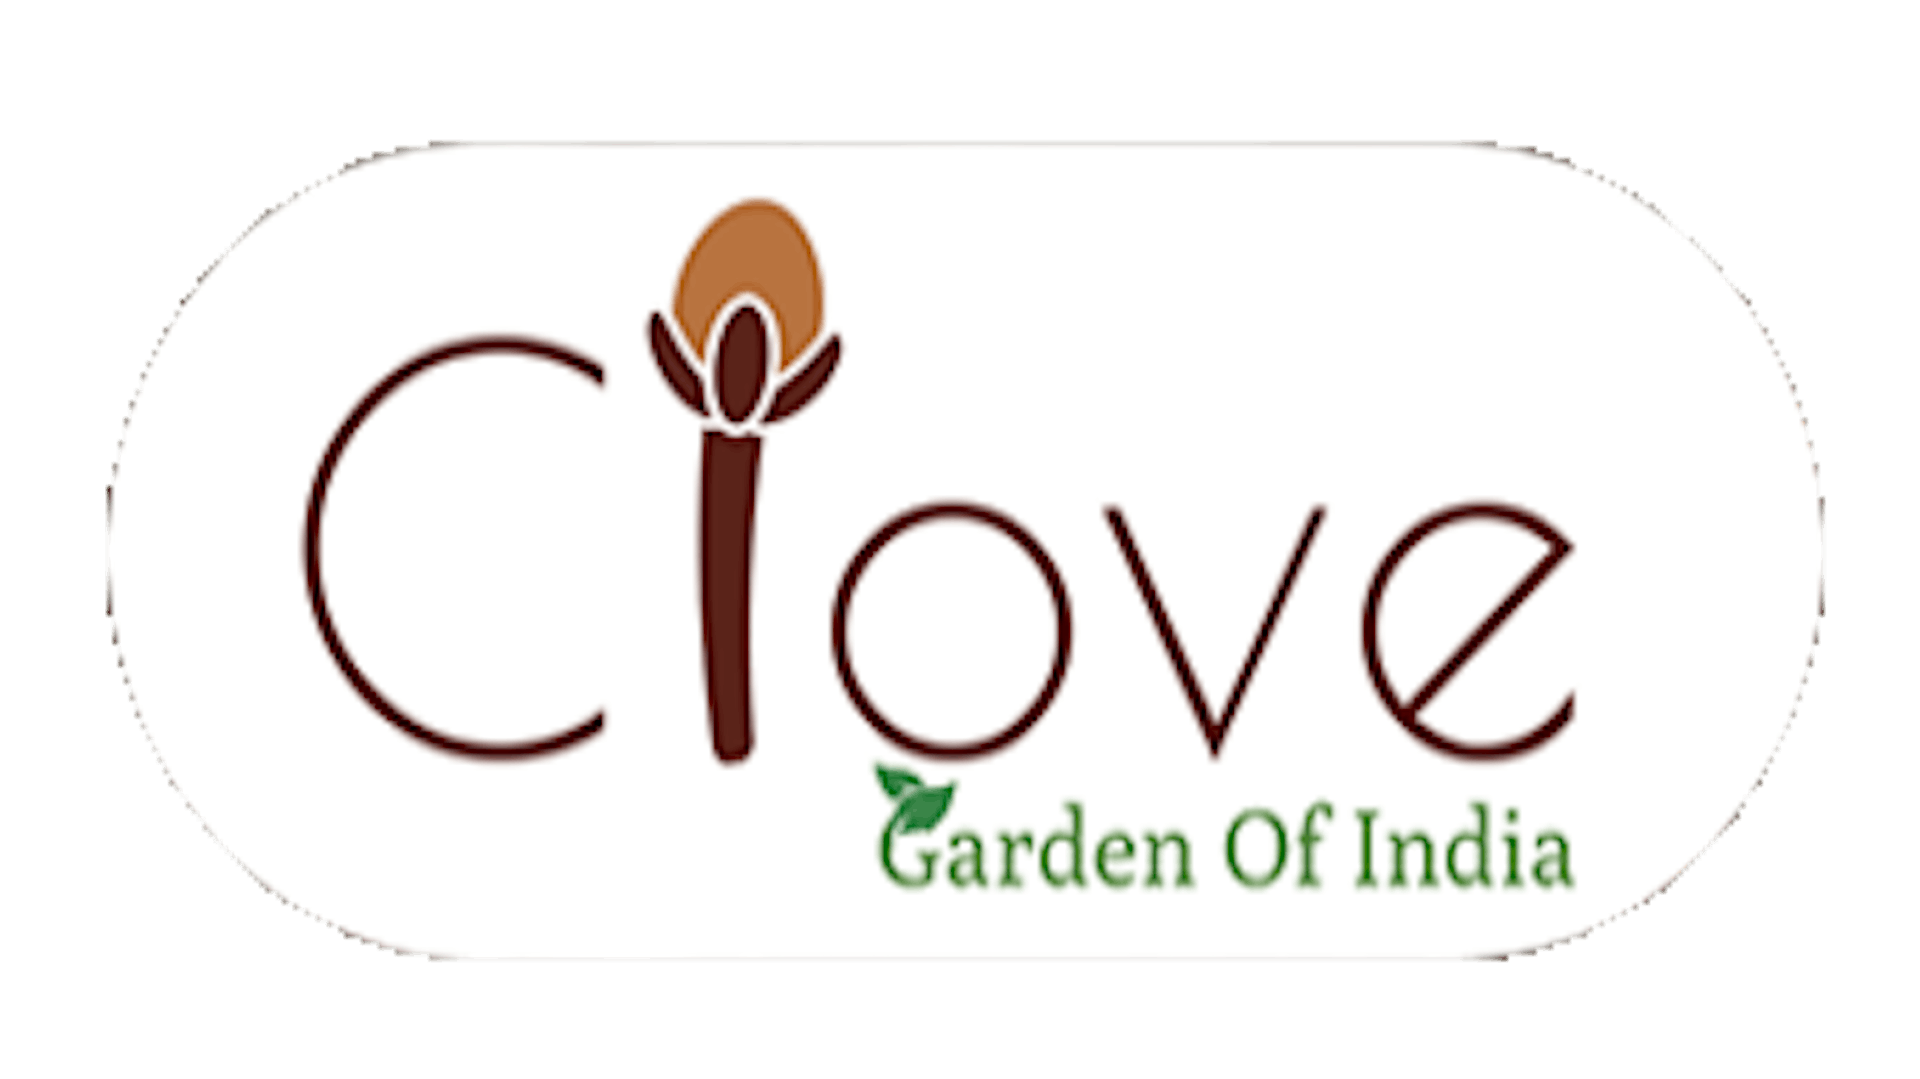 Clove Garden Of India